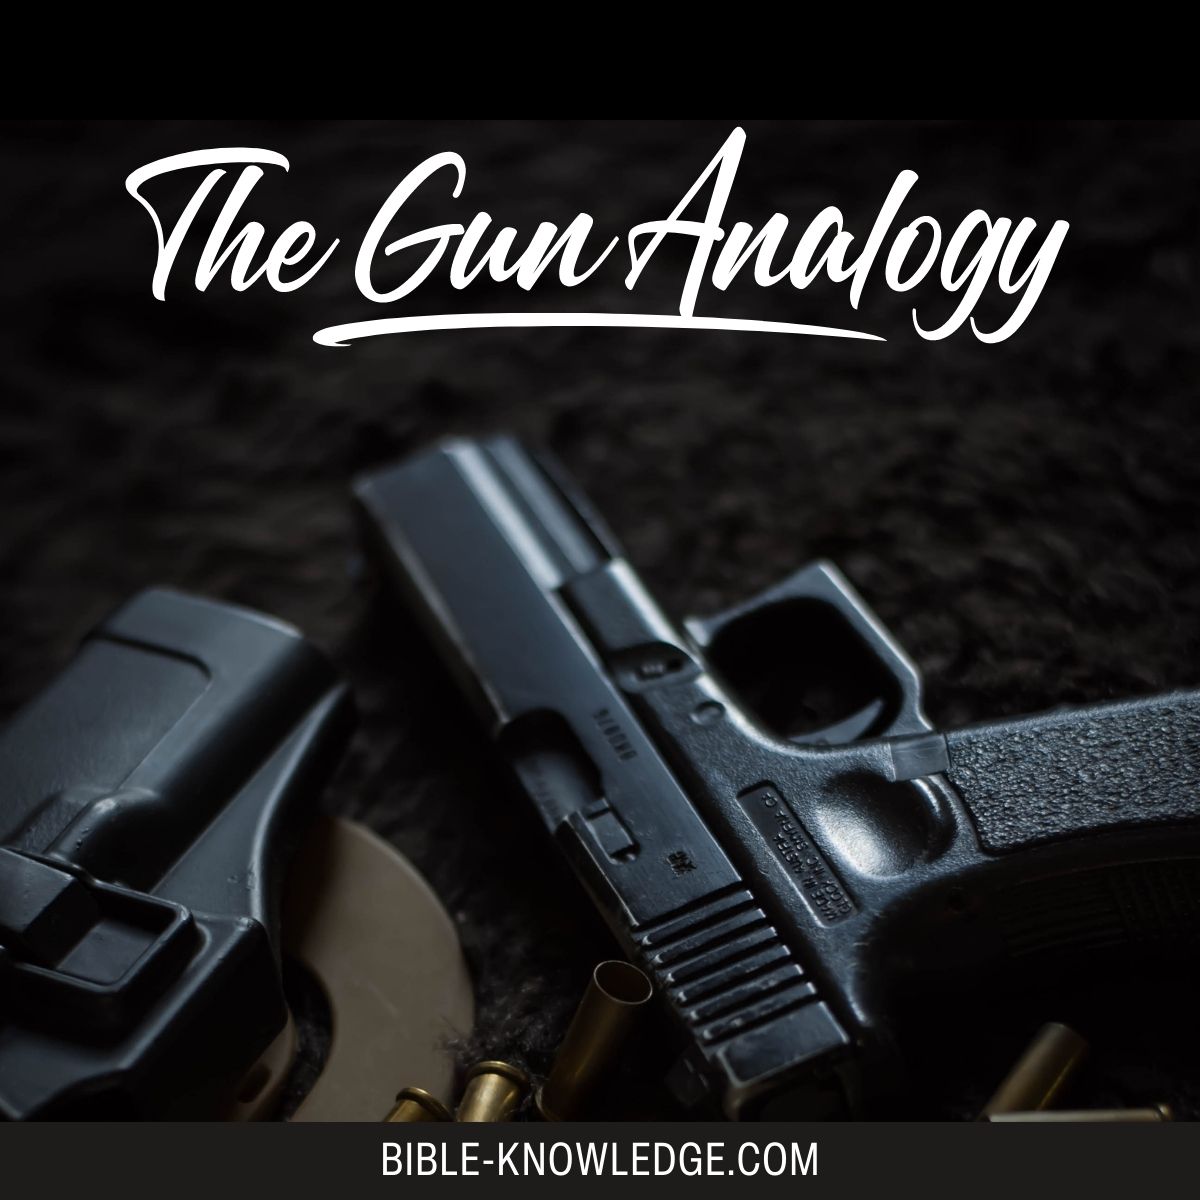 The Gun Analogy